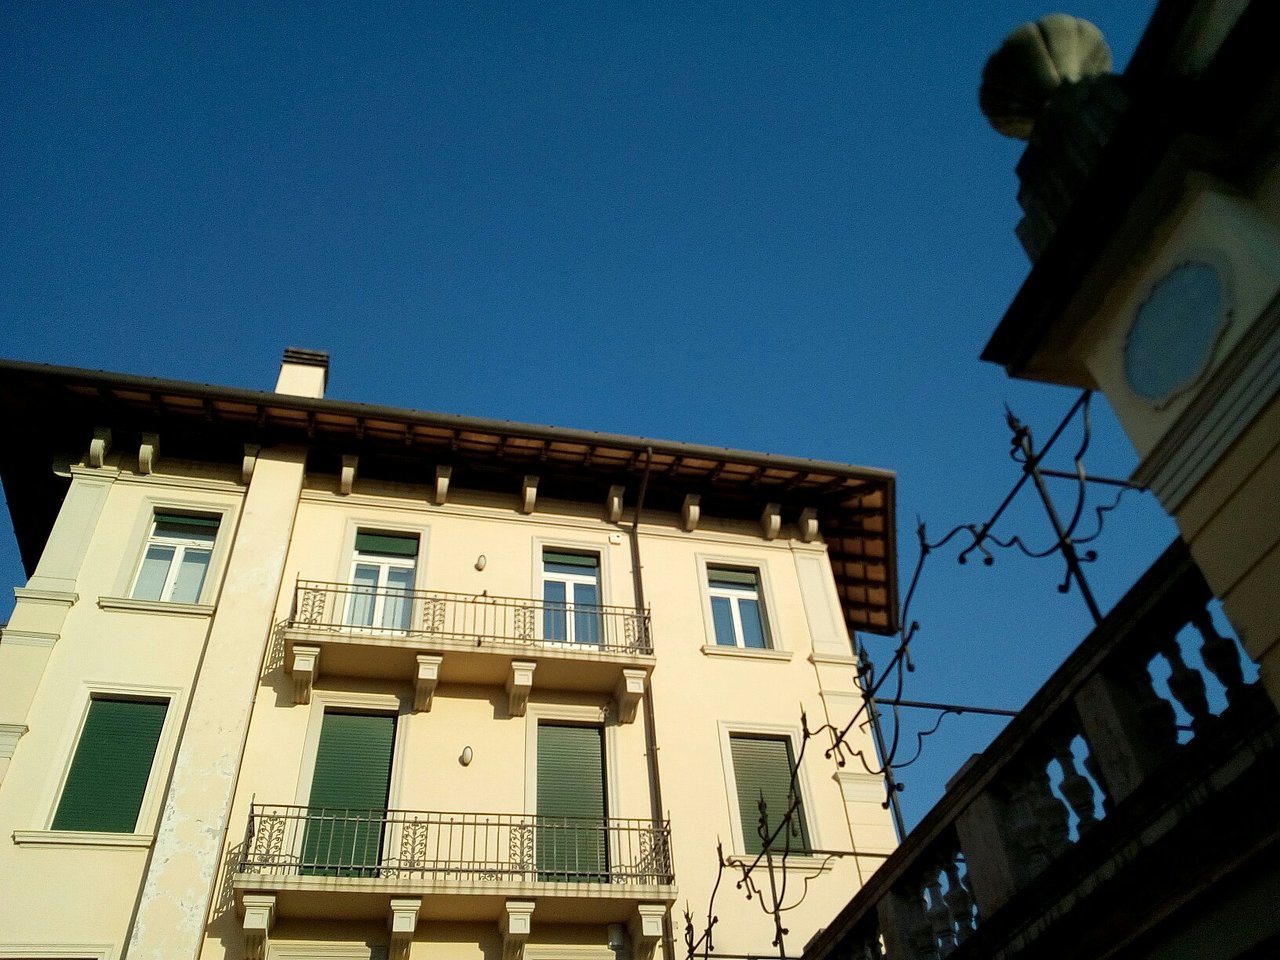 Palazzo Moretti